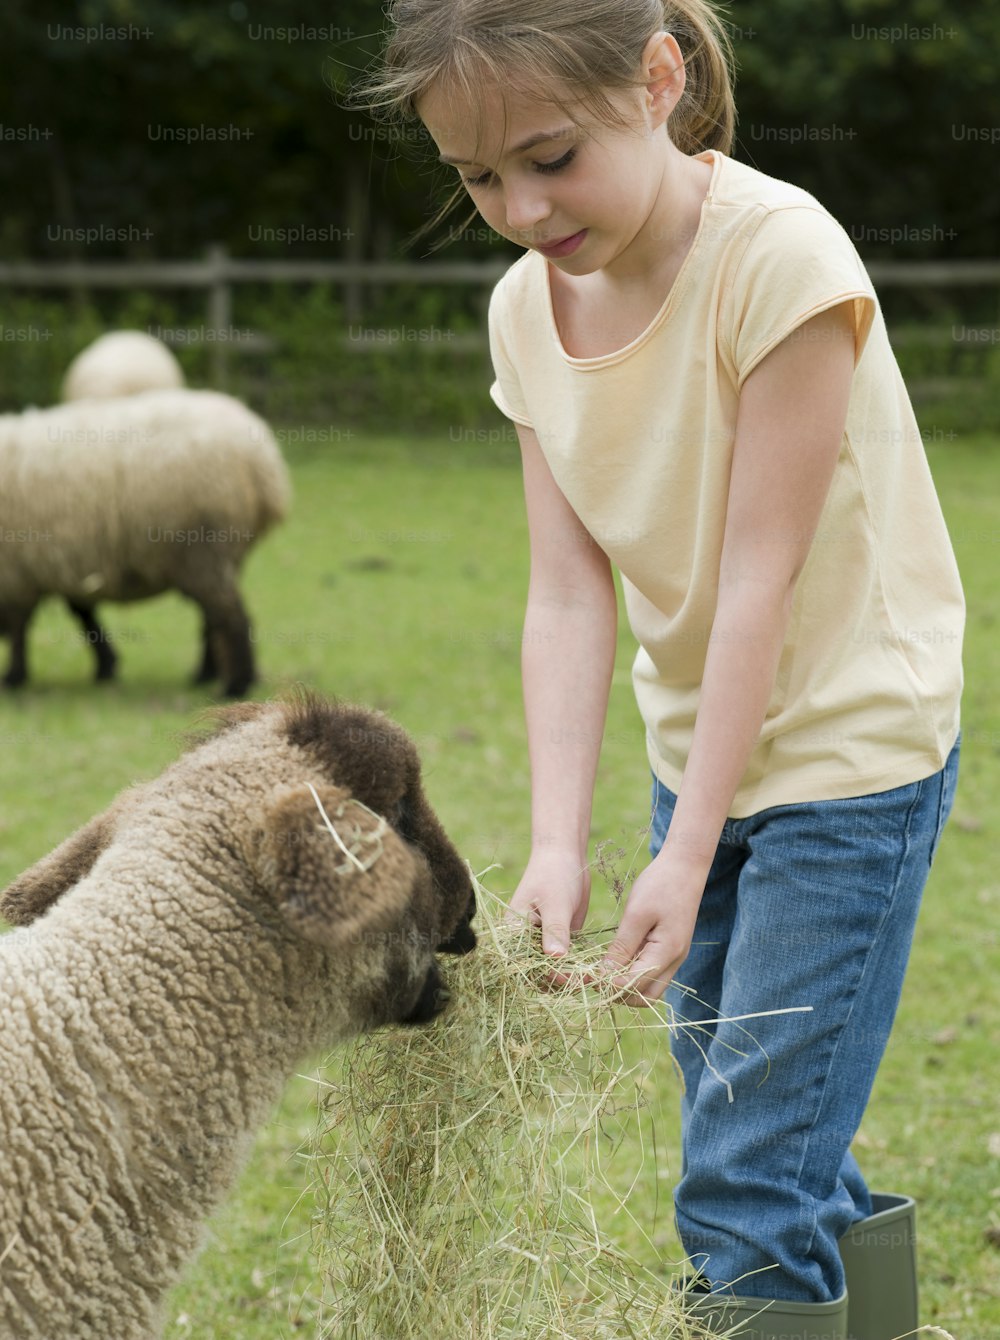 Ein junges Mädchen, das ein Schaf auf einem Feld füttert